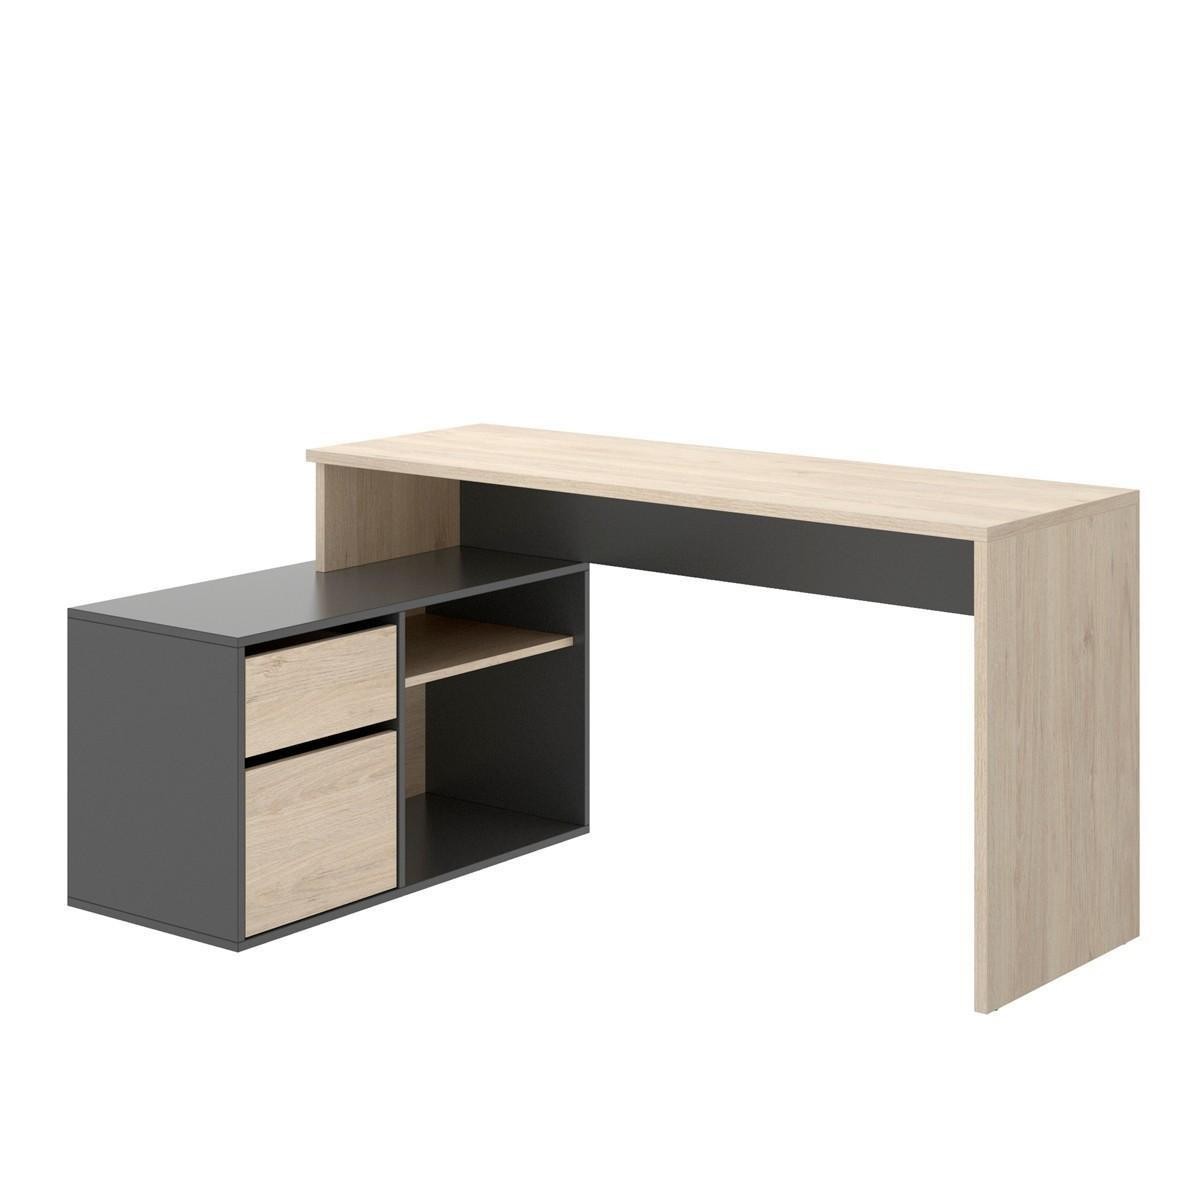 Mesa escritorio ROX tablero de partículas melaminizado color  blanco/natural, grafito/natural o blanco 92x139x75 cm / 51x200-230x -  Centro Mueble Online